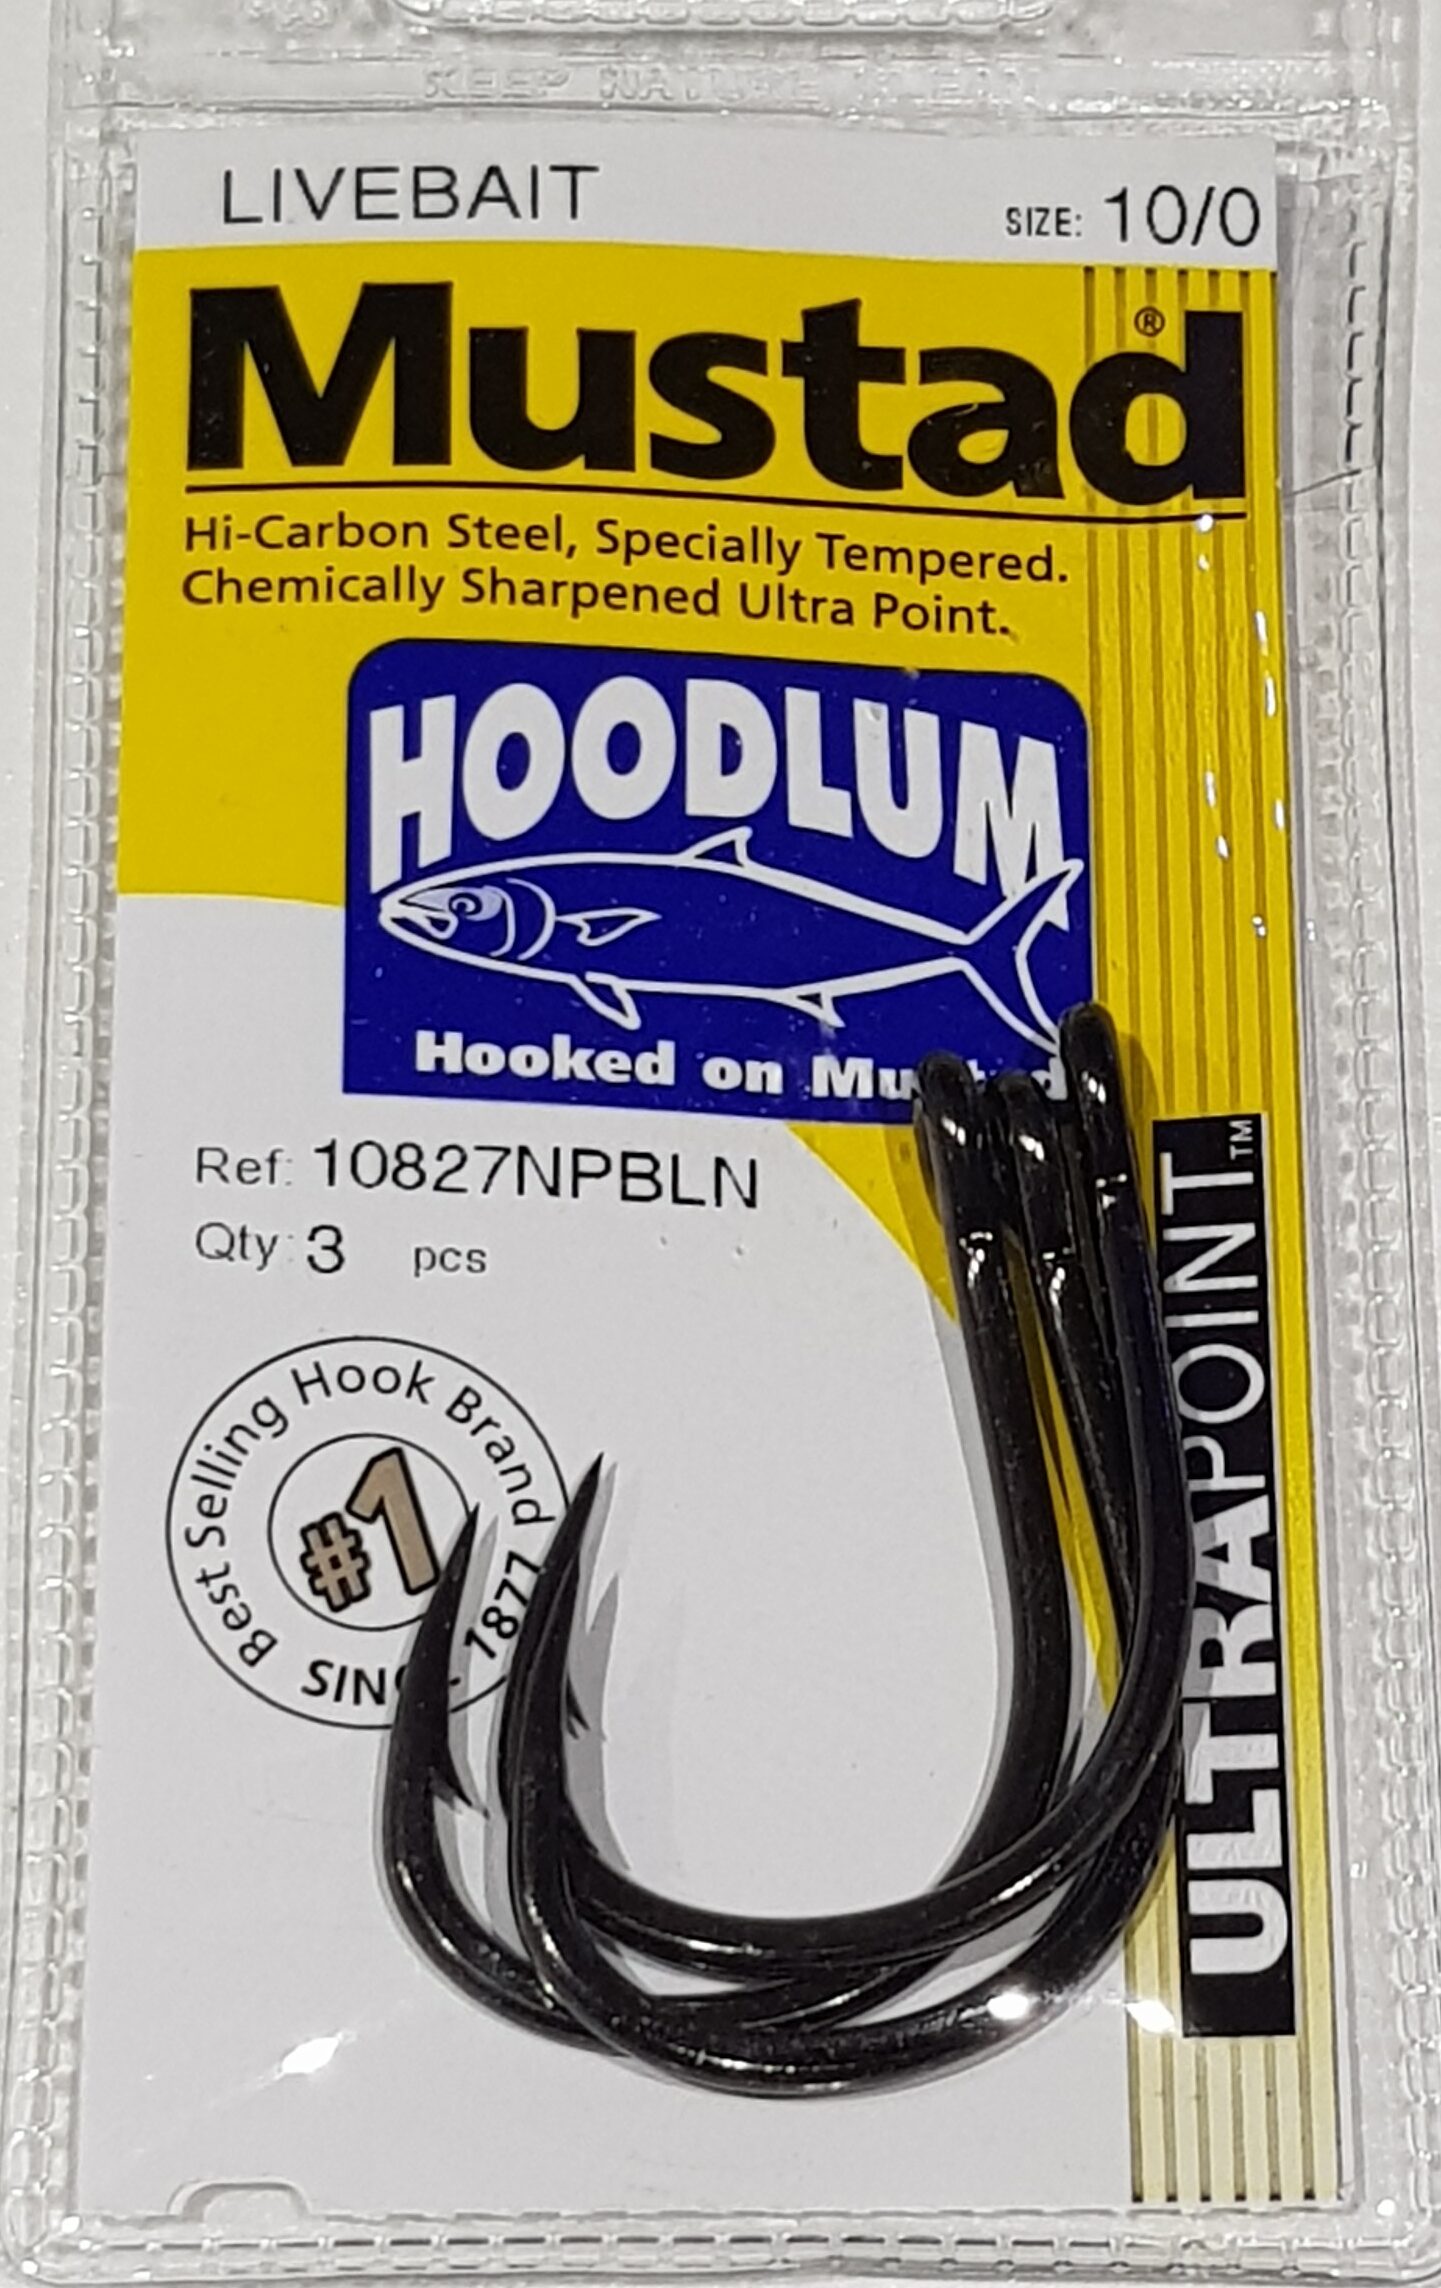 Mustad Hoodlum Live Bait Fishing Hooks 10/0